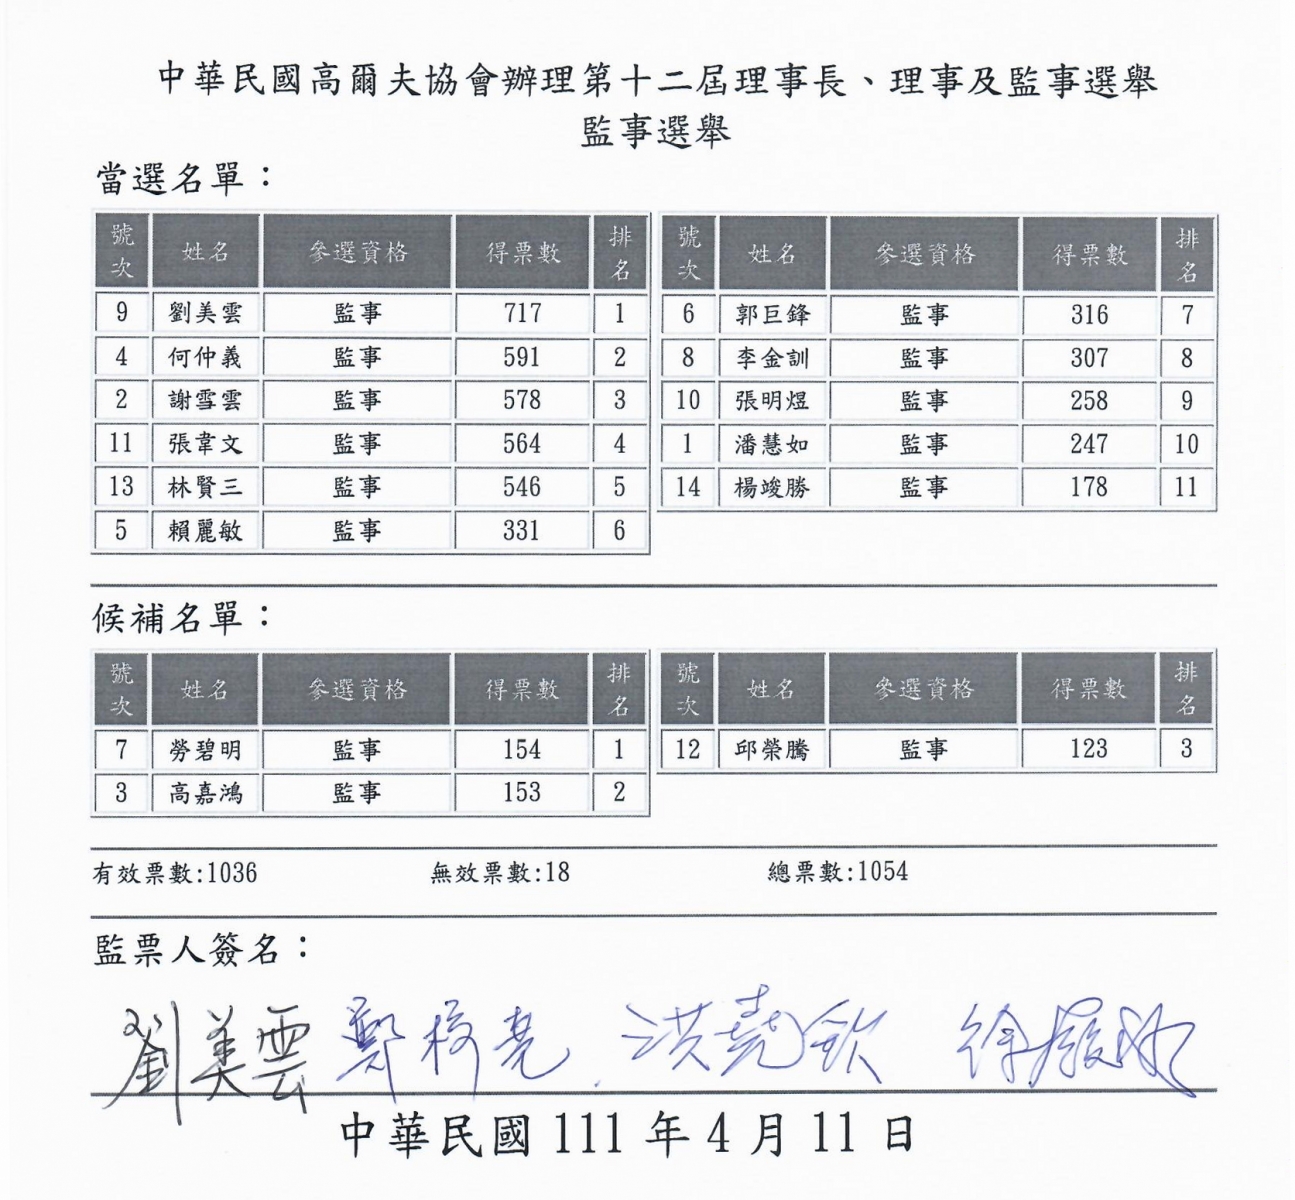 中華高協第十二屆監事競選開票結，正取11席；中華高協提供。